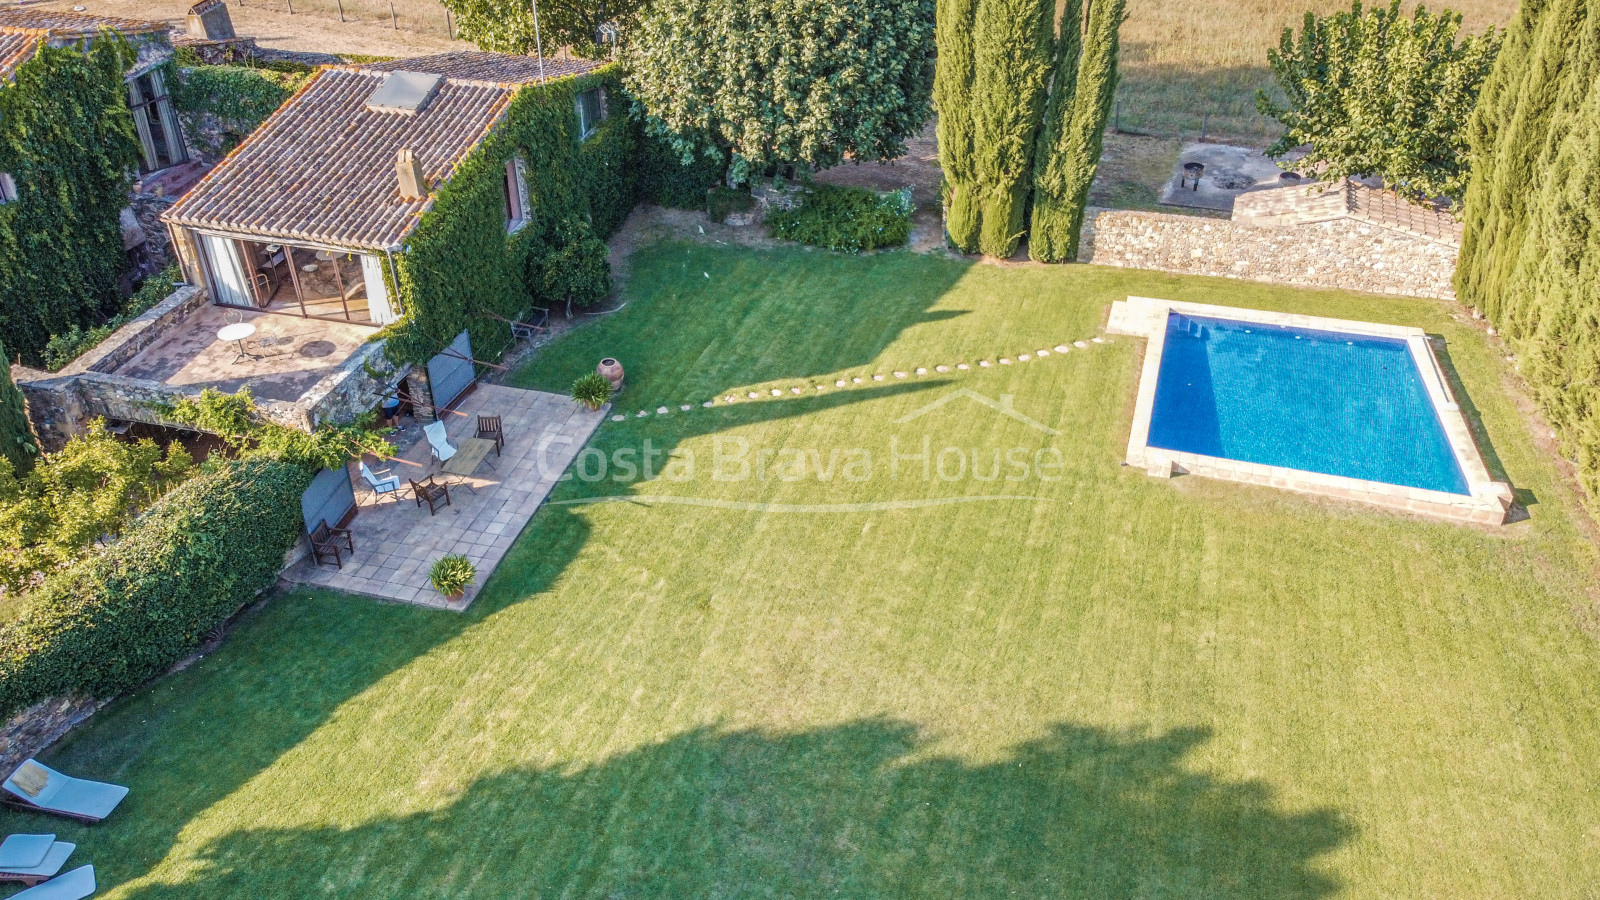 Maison de campagne rénovée à vendre à Cruilles avec 12.000 m² de terrain et joli jardin avec piscine